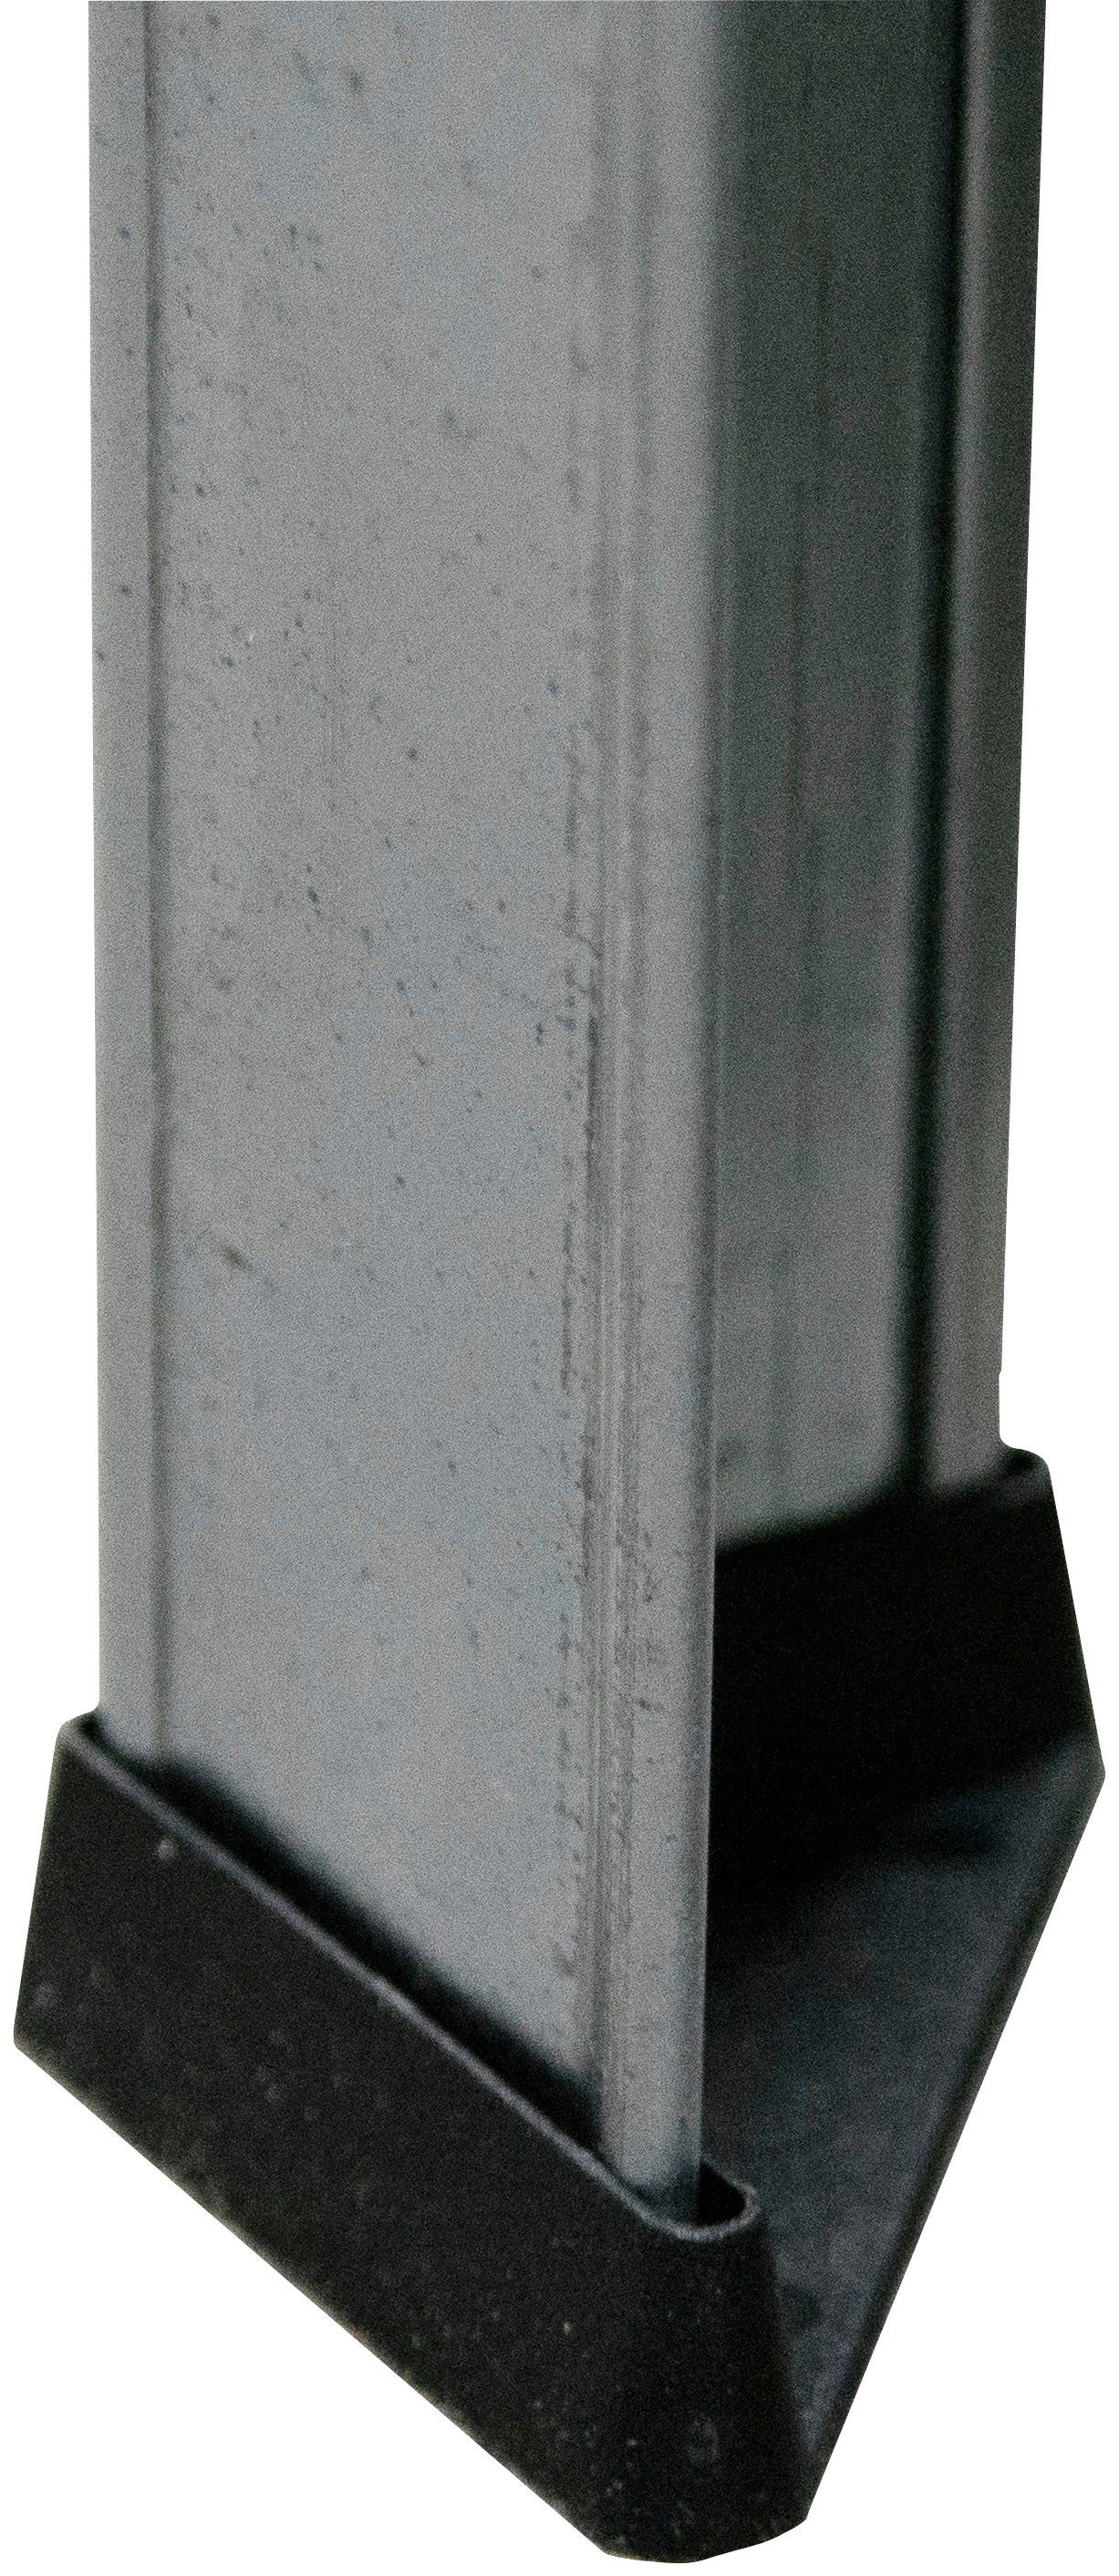 SCHULTE Regalwelt Schwerlastregal Böden, Höhe: Steck erhältlich in Ausführungen 180cm, 4 Weitspann/Schwerlastregal, verschiedenen